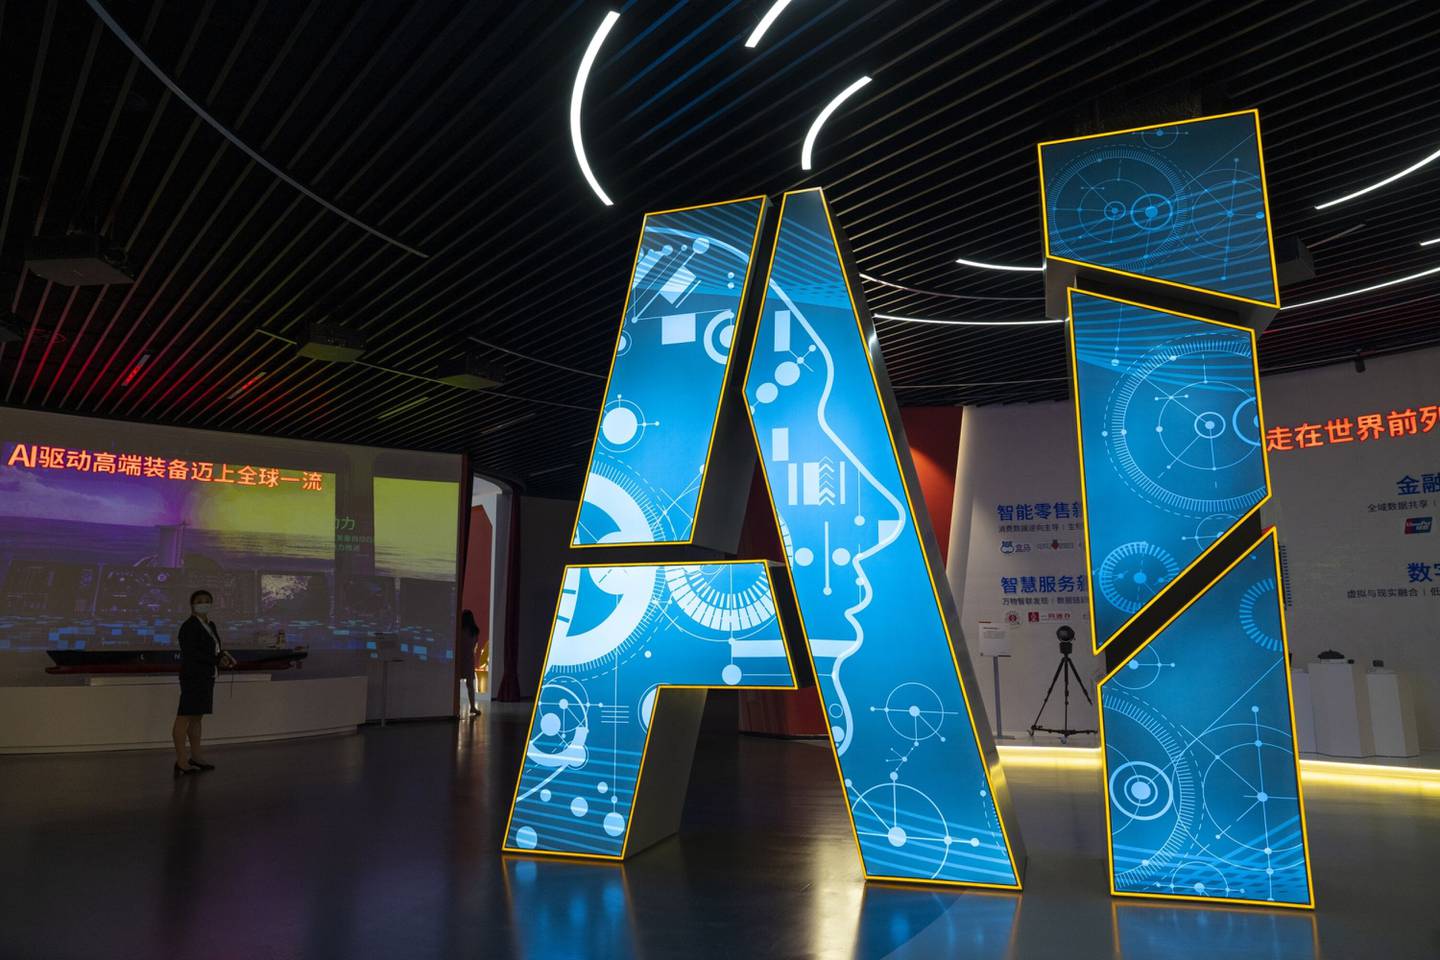 En el Pabellón de la Inteligencia Artificial del Parque del Futuro de Zhangjiang se muestran aplicaciones de vanguardia de la Inteligencia Artificial durante una visita organizada por los medios de comunicación el 18 de junio de 2021 en Shanghái, China. (Fotografía de Andrea Verdelli/Getty Images)